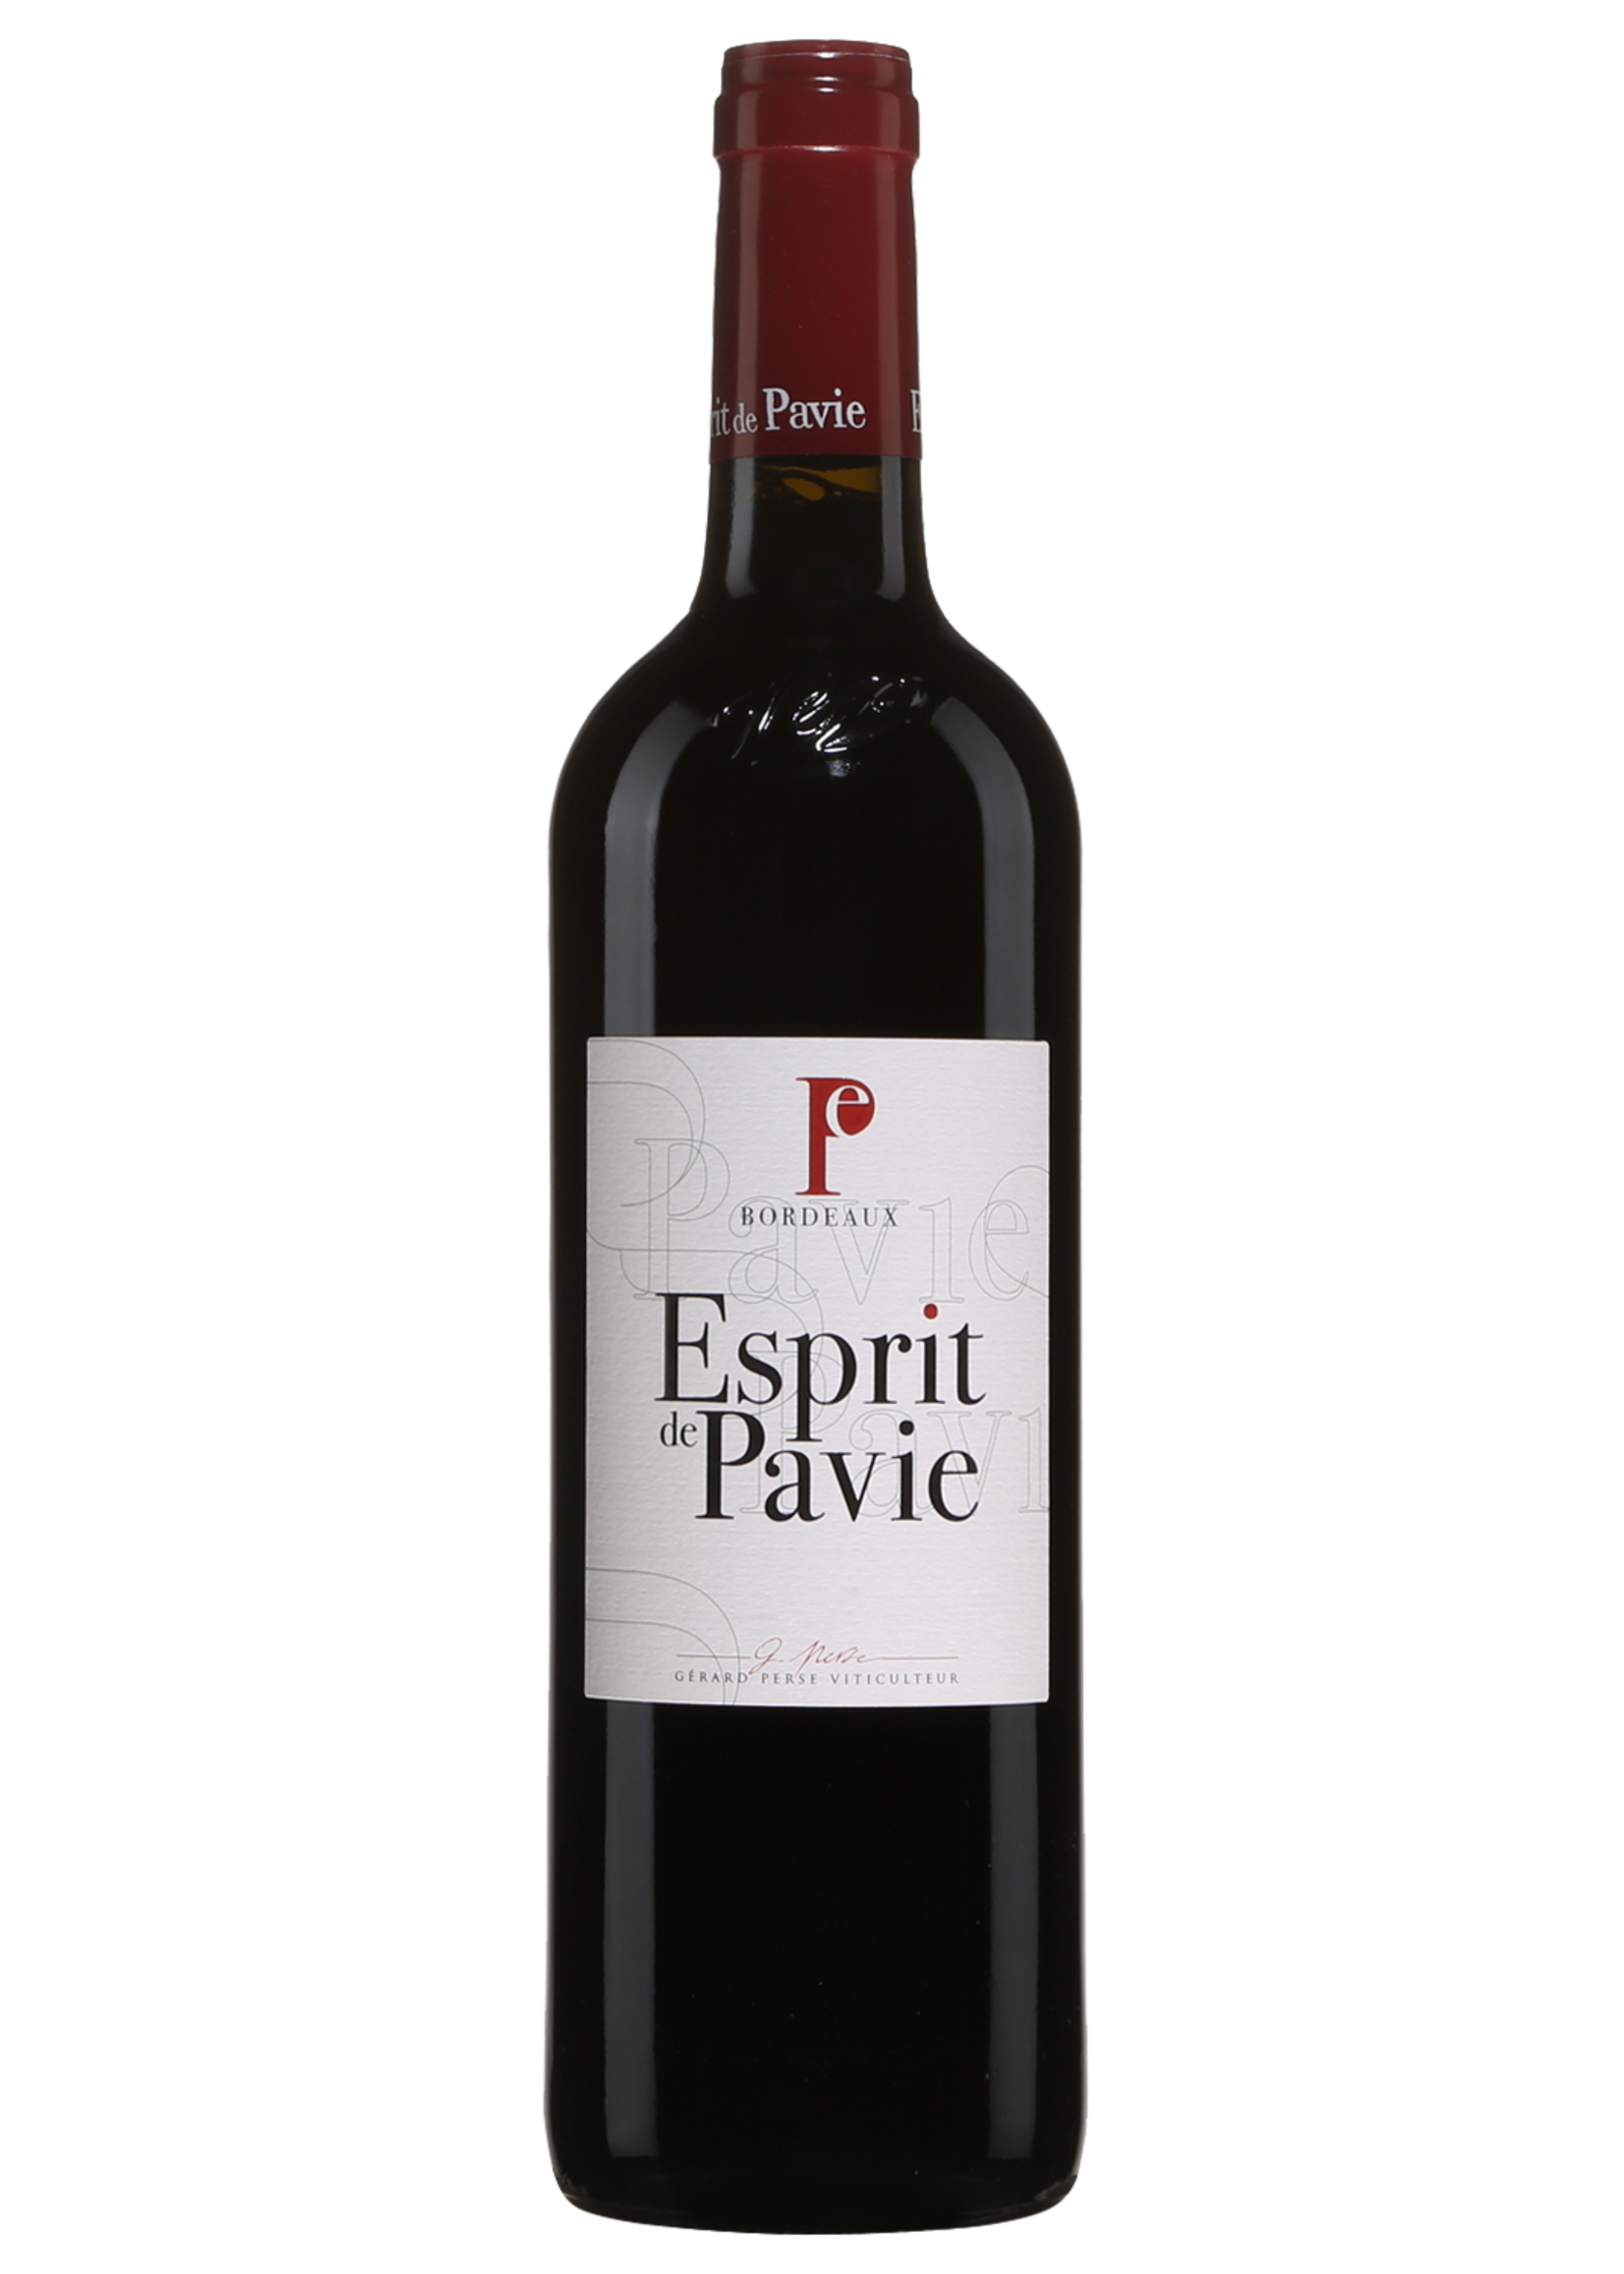 Chateau Pavie Chateau Pavie / Bordeaux Esprit De Pavie 2018 / 750mL